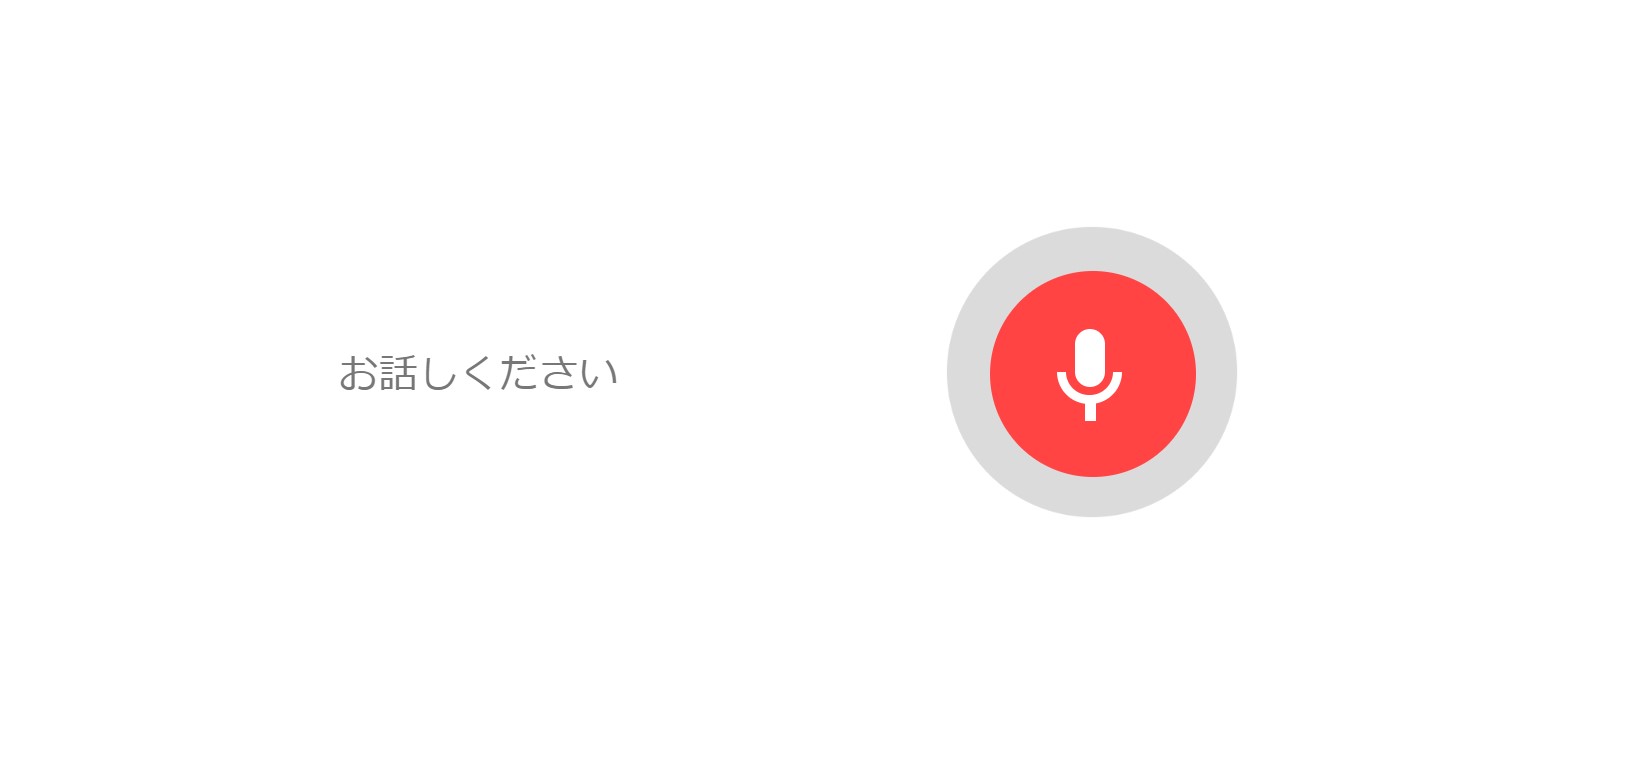 Google検索内の検索ボックスにある 音声入力機能 マイクボタン が利用できない マイクロソフト コミュニティ